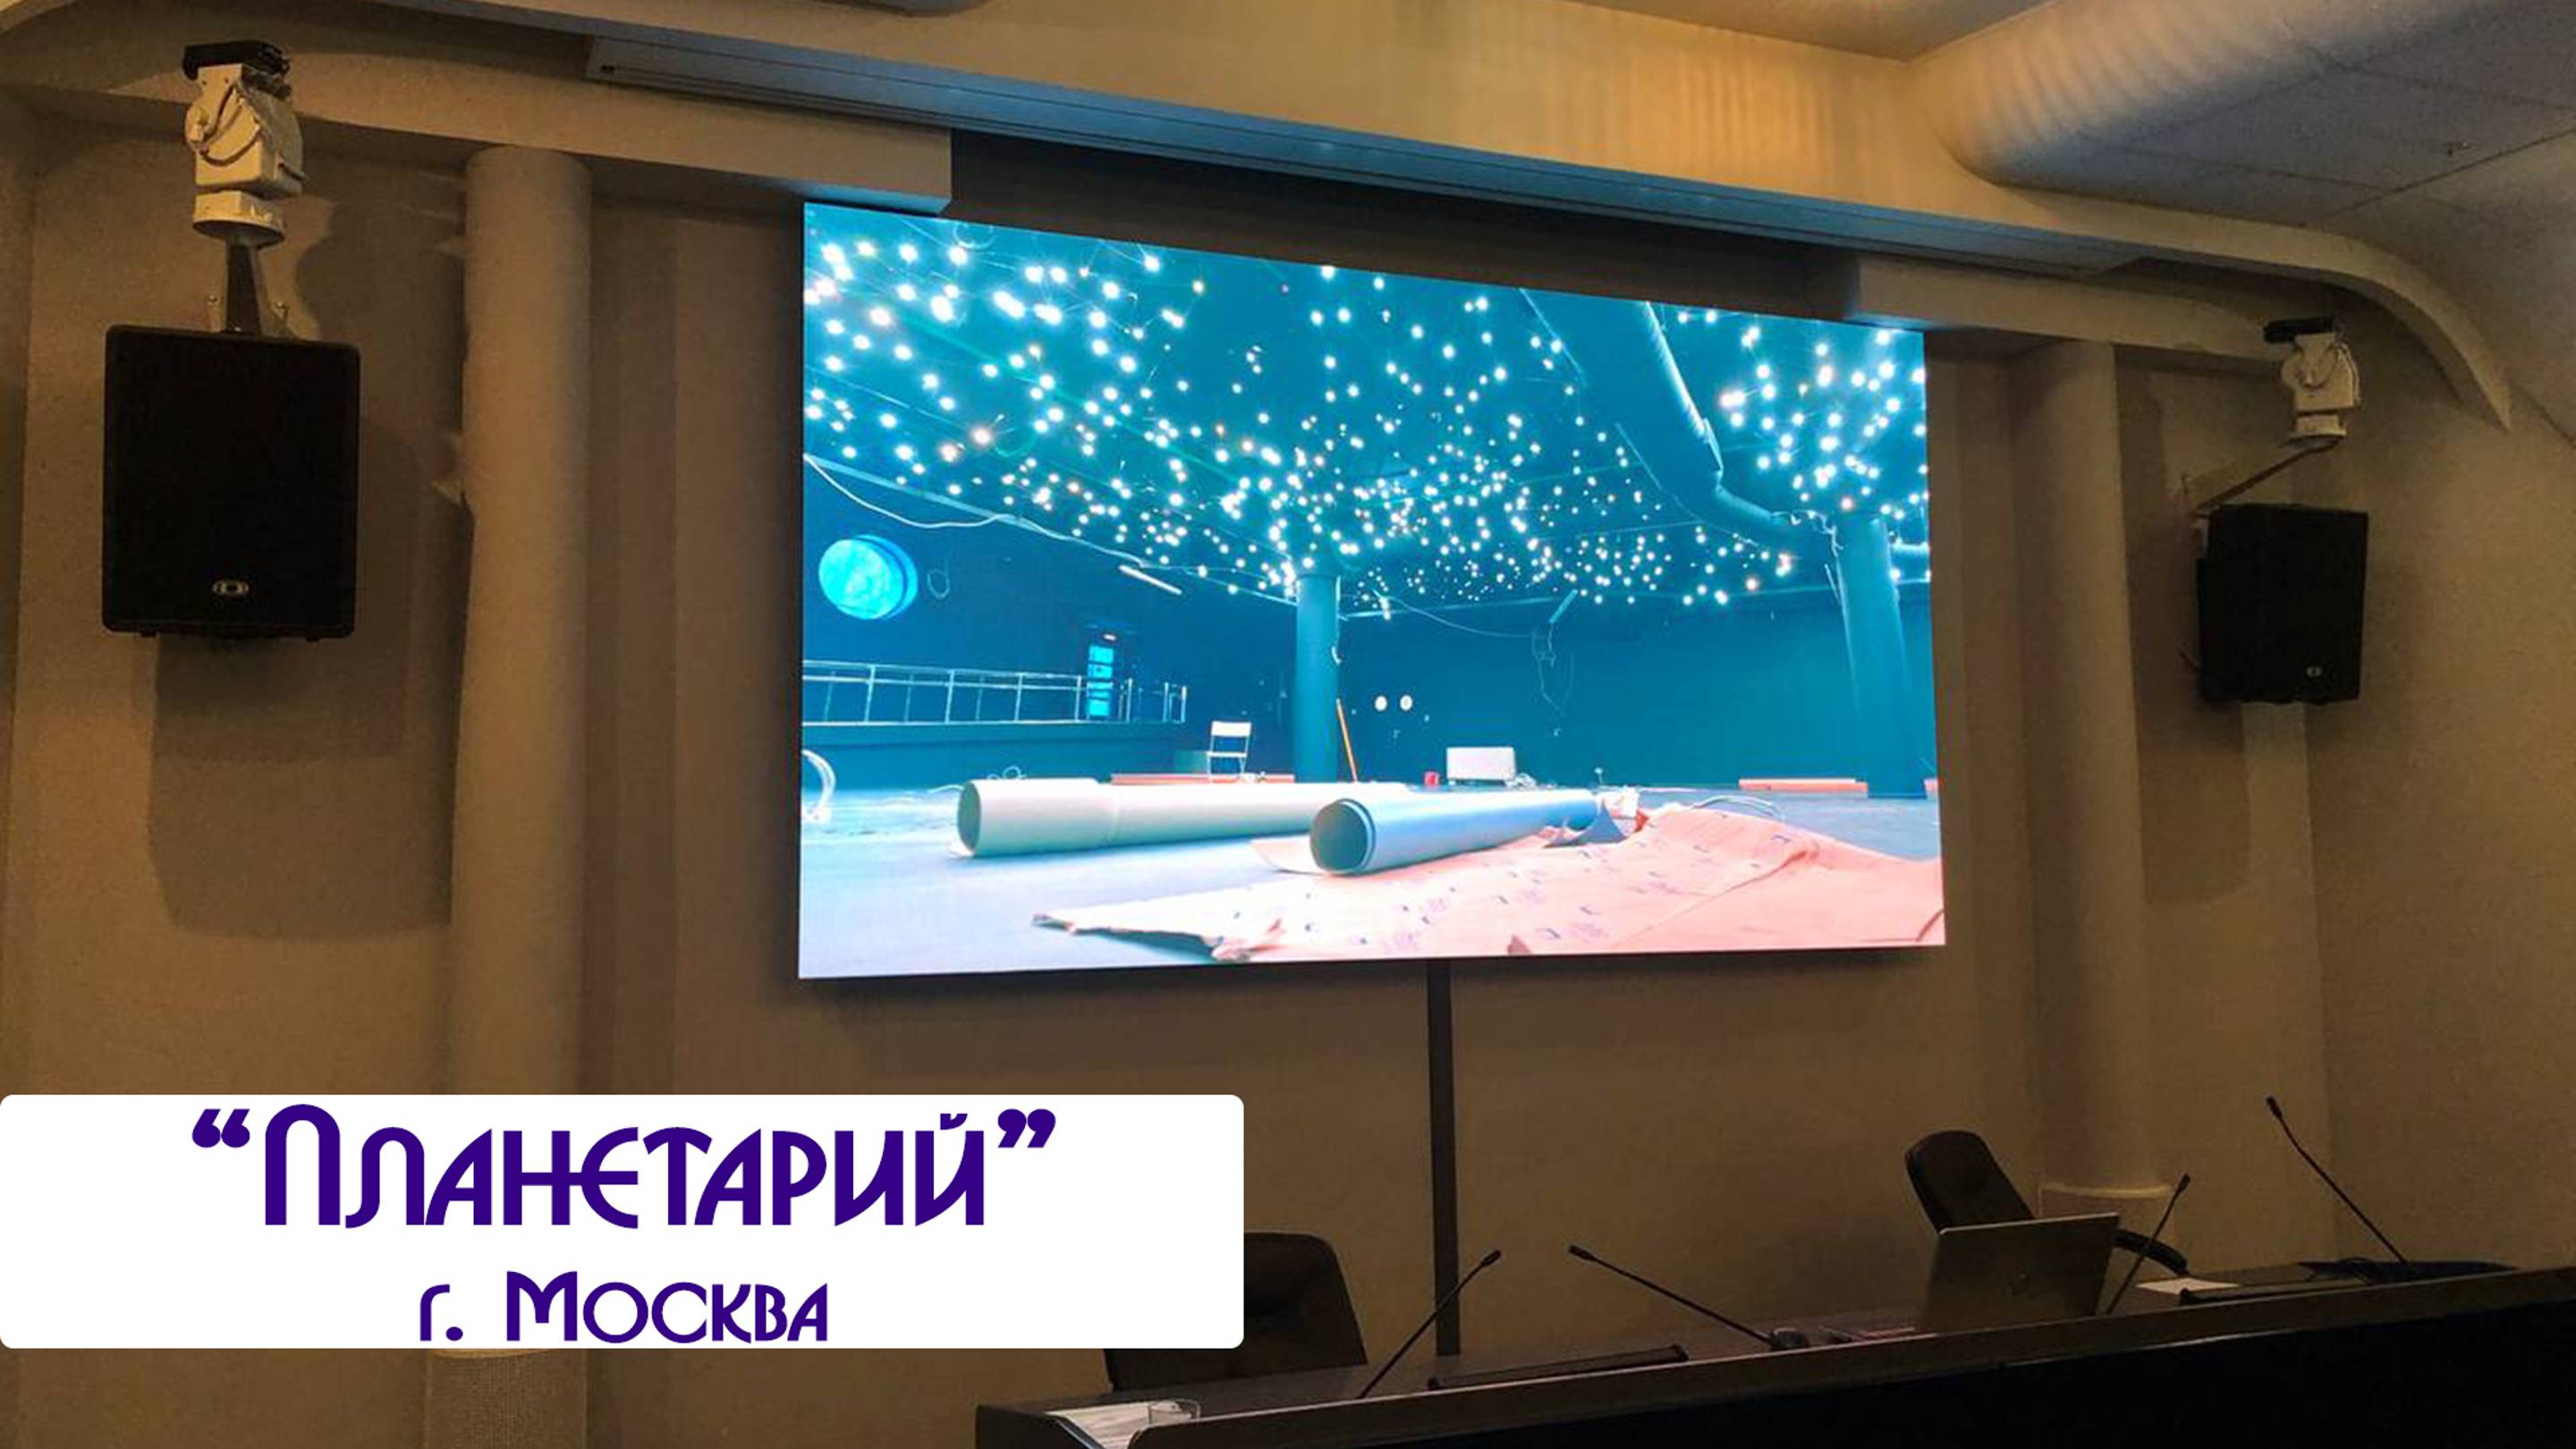 "Планетарий" г Москва, Светодиодная видеостена. Visual System (Led экраны, монтаж, купить лед лэд)